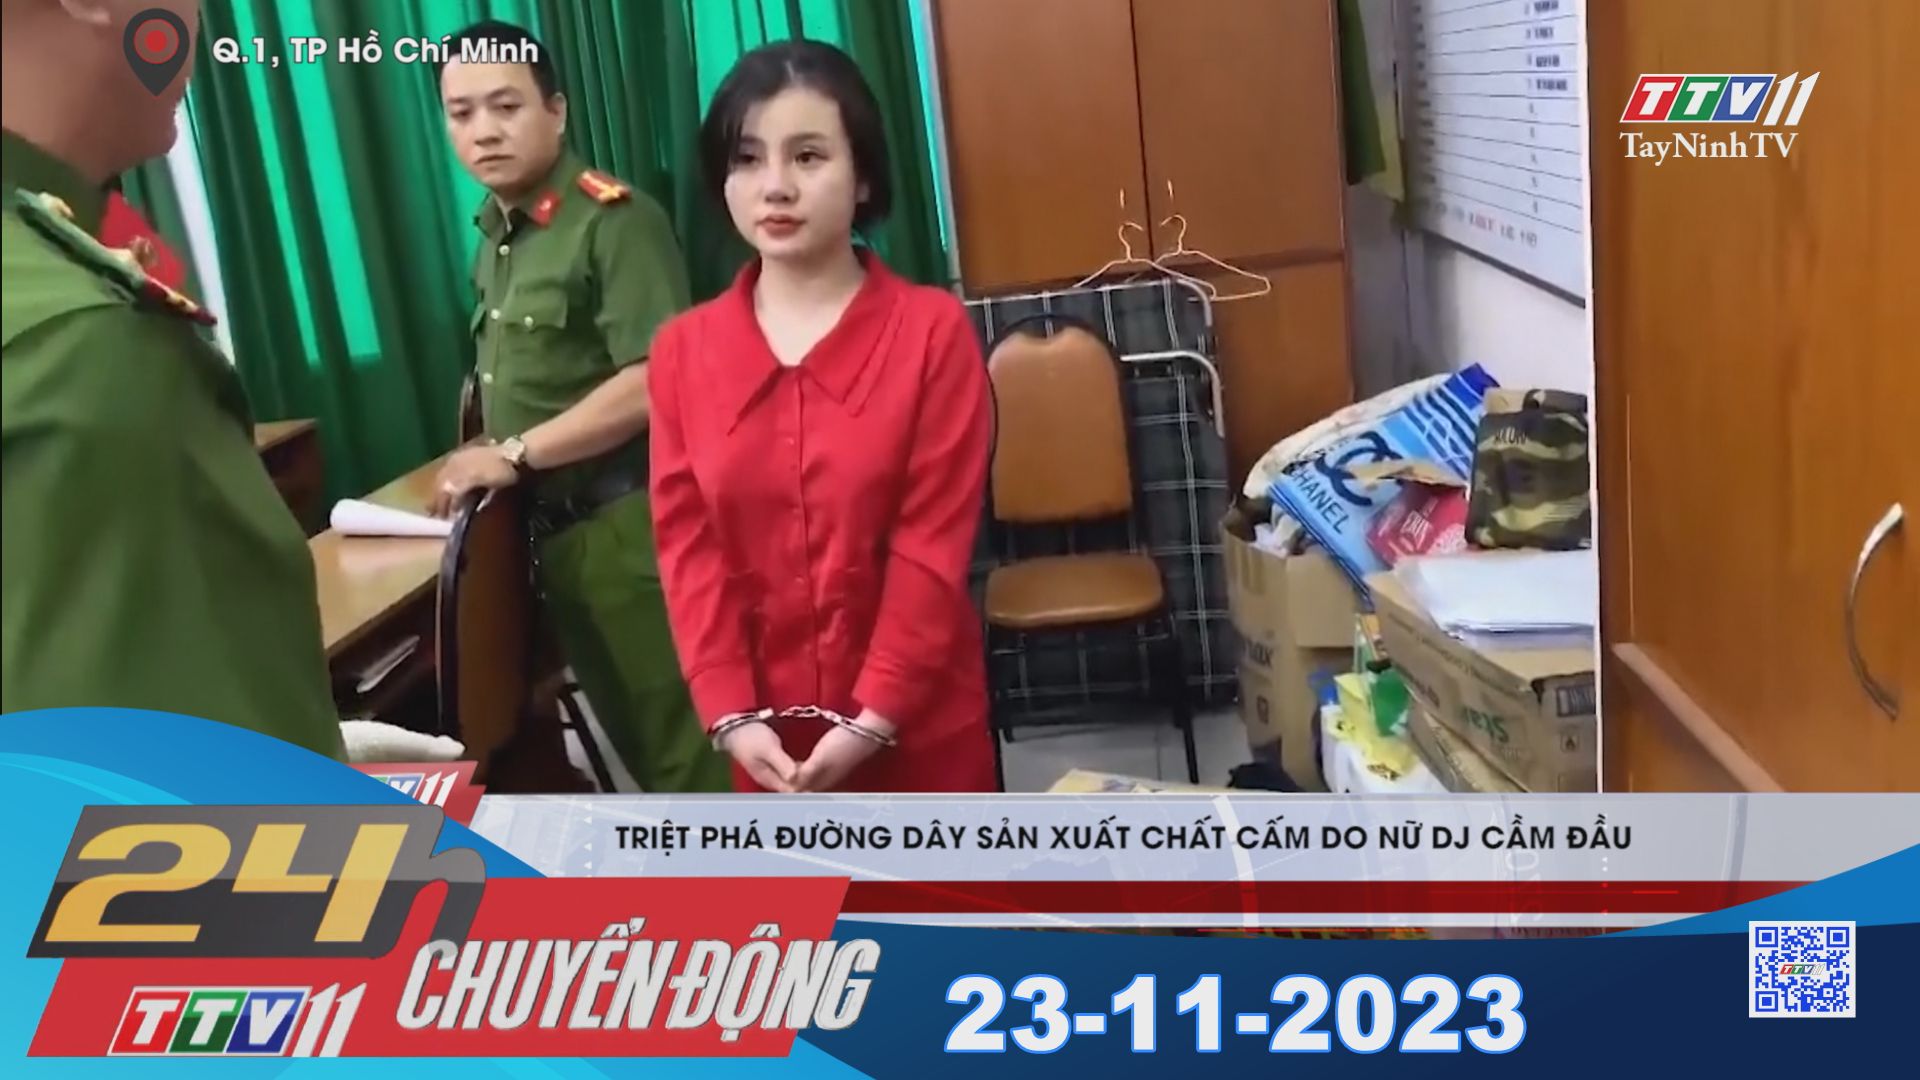 24h Chuyển động 23-11-2023 | Tin tức hôm nay | TayNinhTV